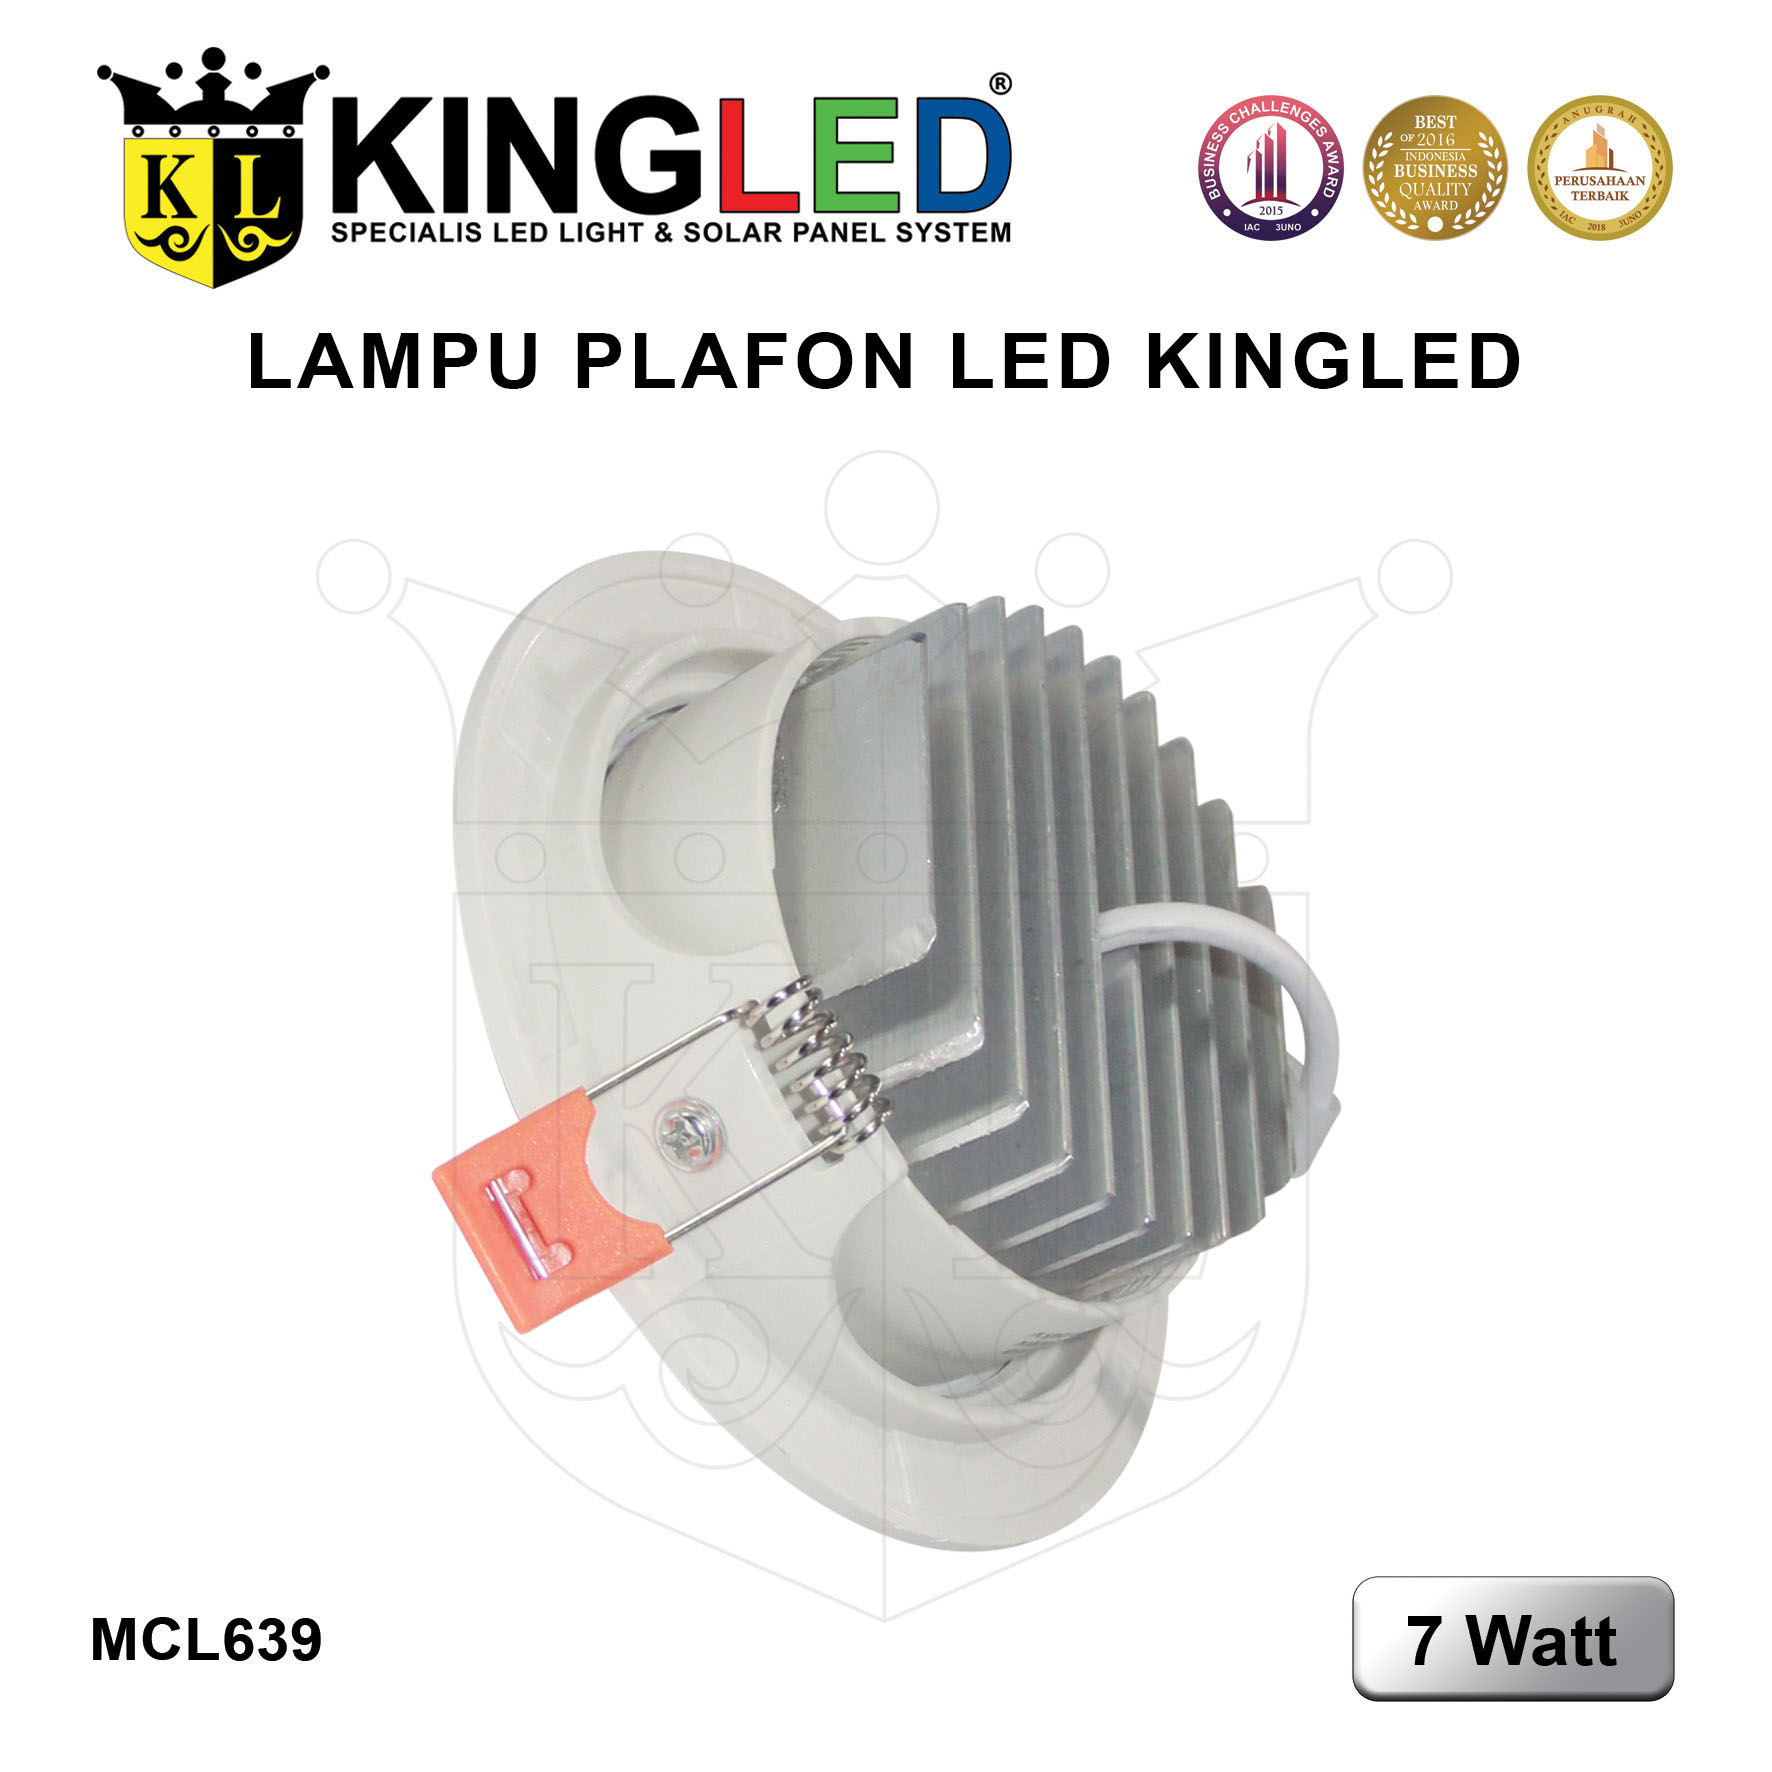 Lampu Plafon LED 7 Watt / LED DownLight 7 Watt